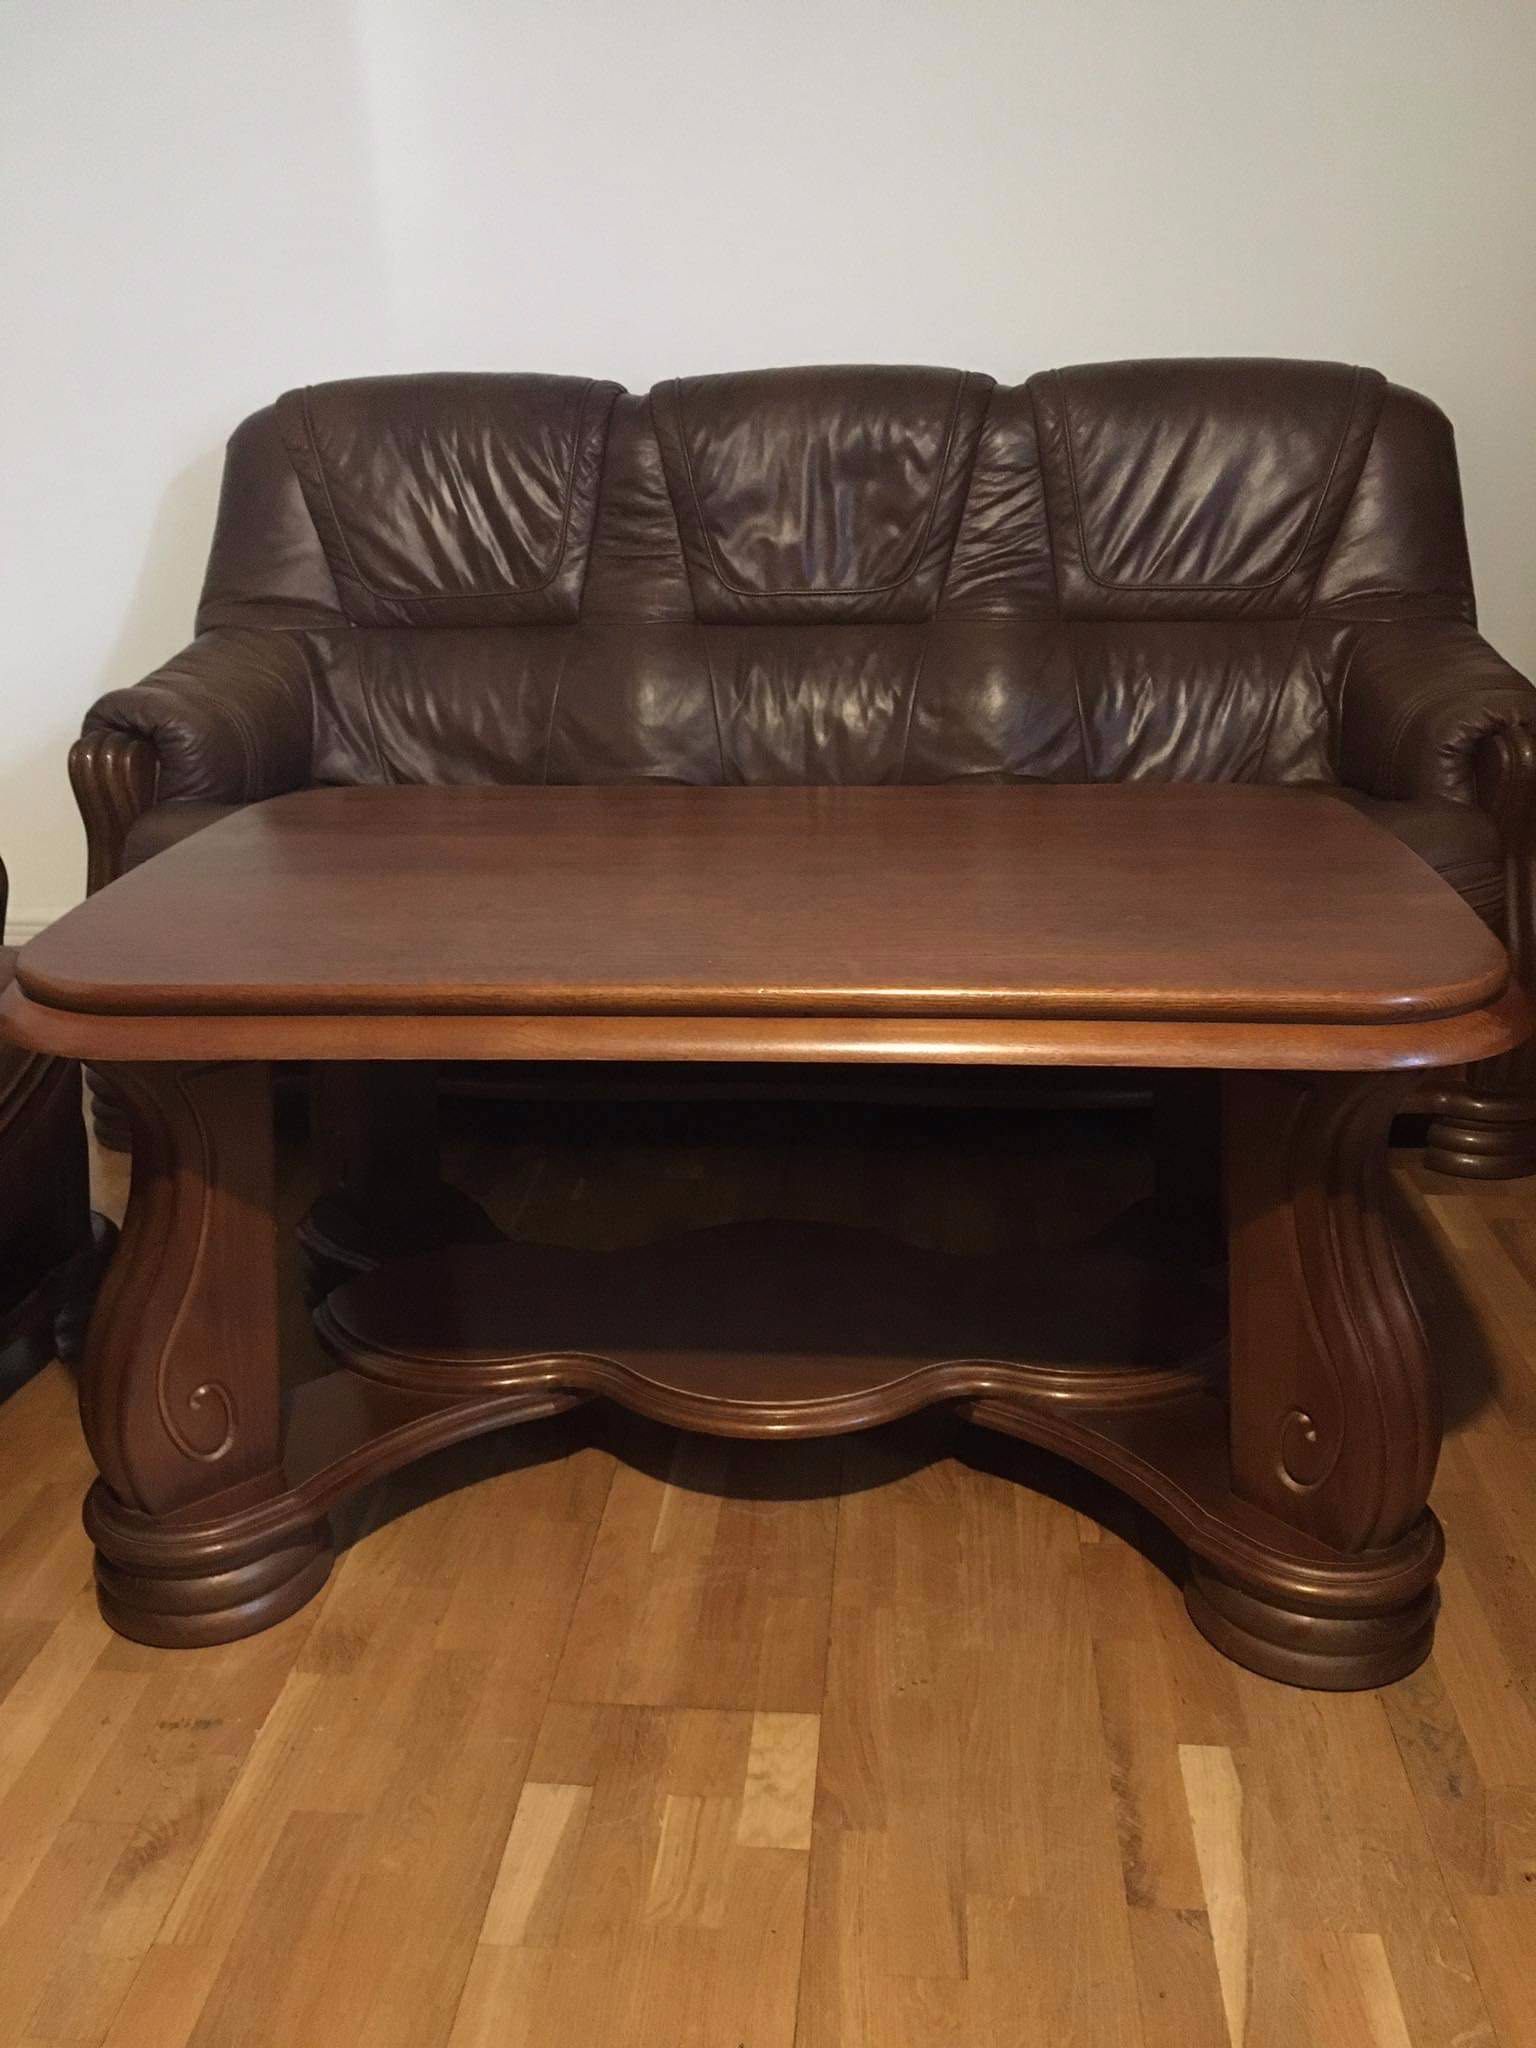 Meble  Kler skóra  -kanapa ,2 fotele,ława  kolor brązowy